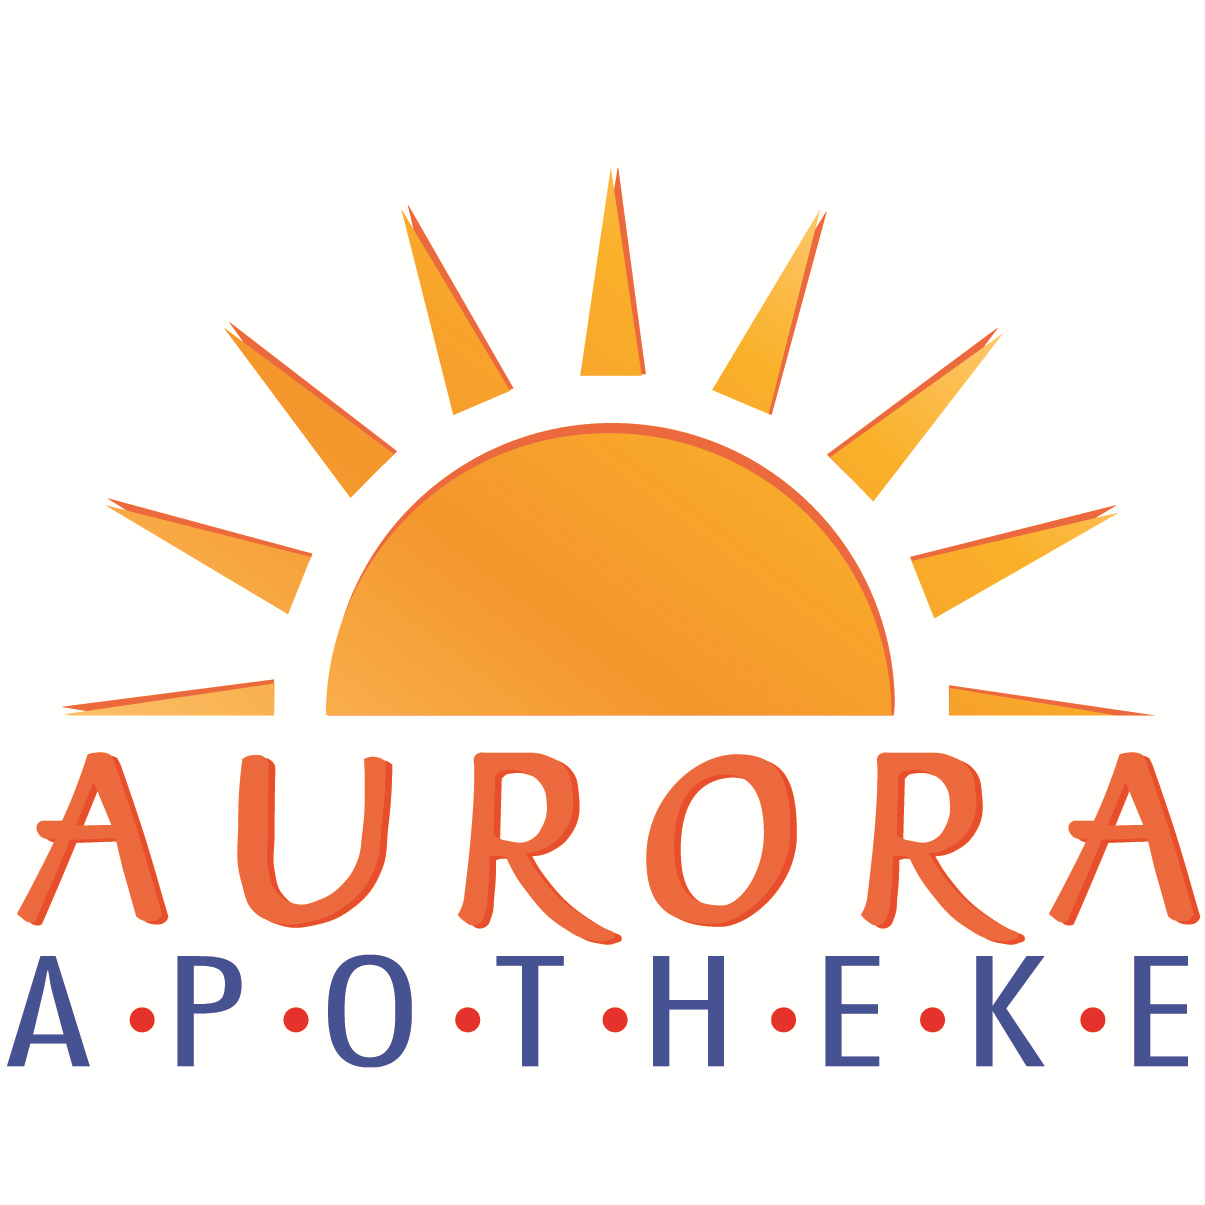 Aurora-Apotheke  